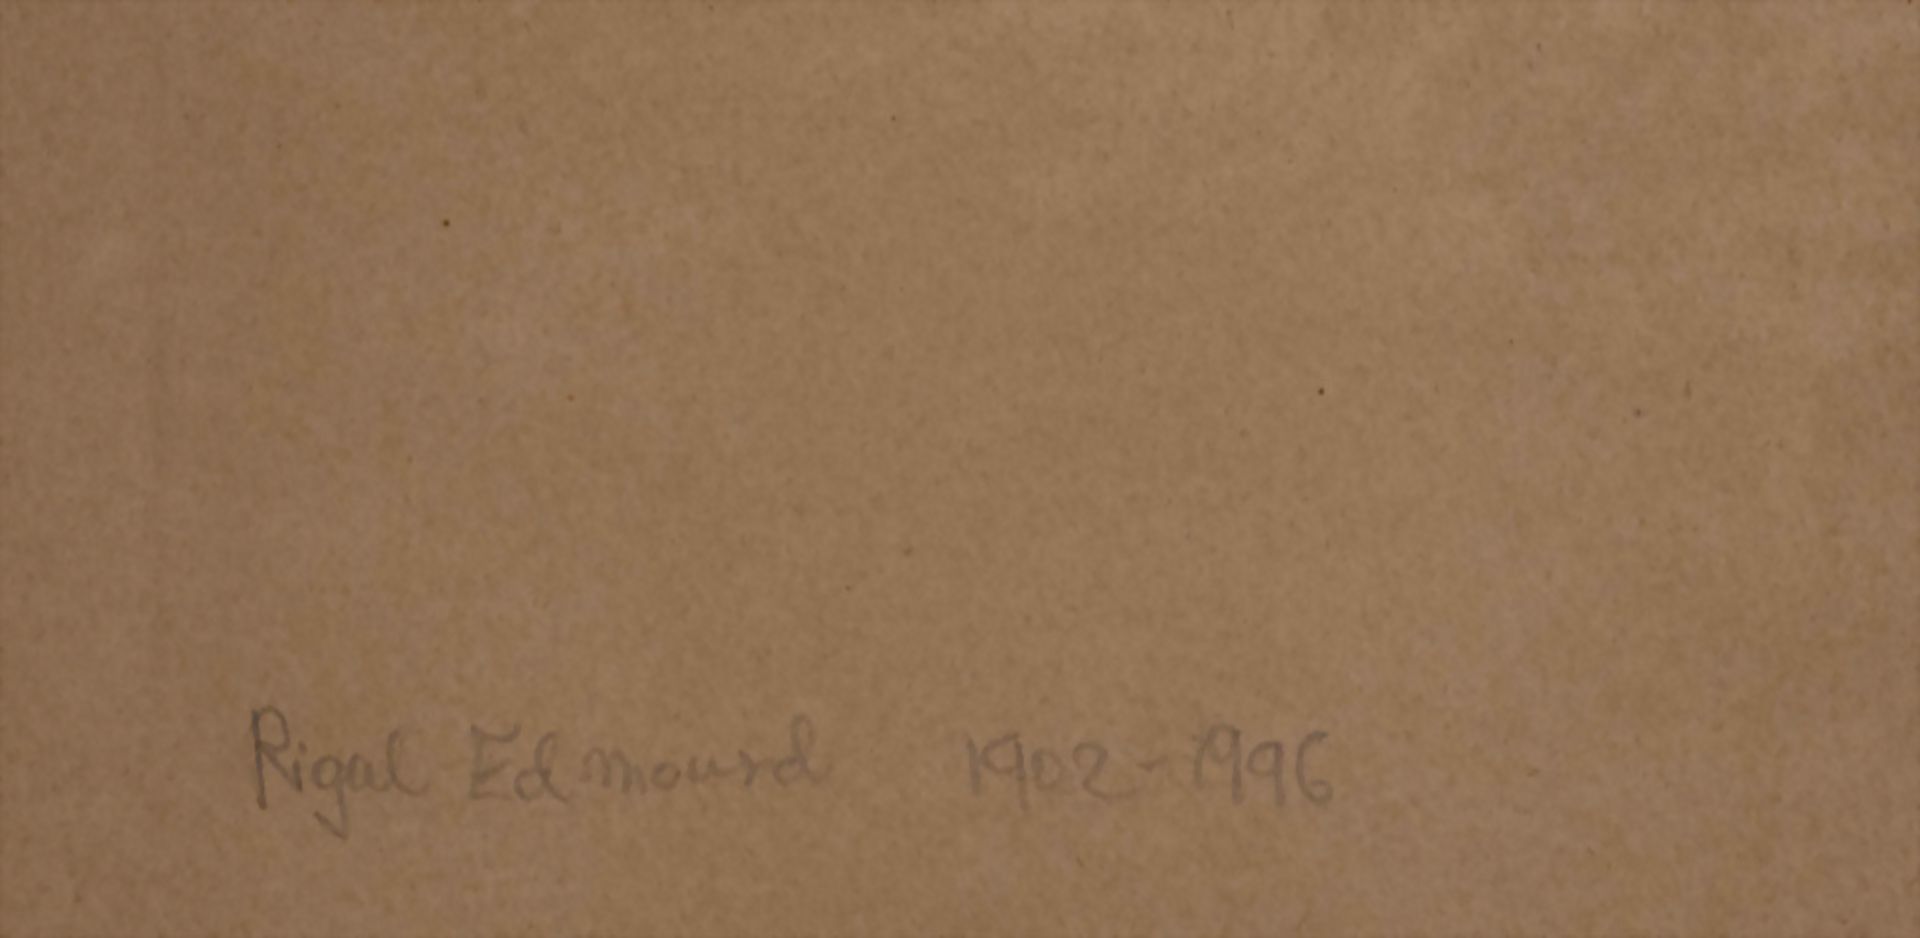 Edmond RIGAL (1902-1996), 'Sortie des artistes Cadaqués' / 'Künstlerausflug (nach) Cadaqués' - Image 4 of 4